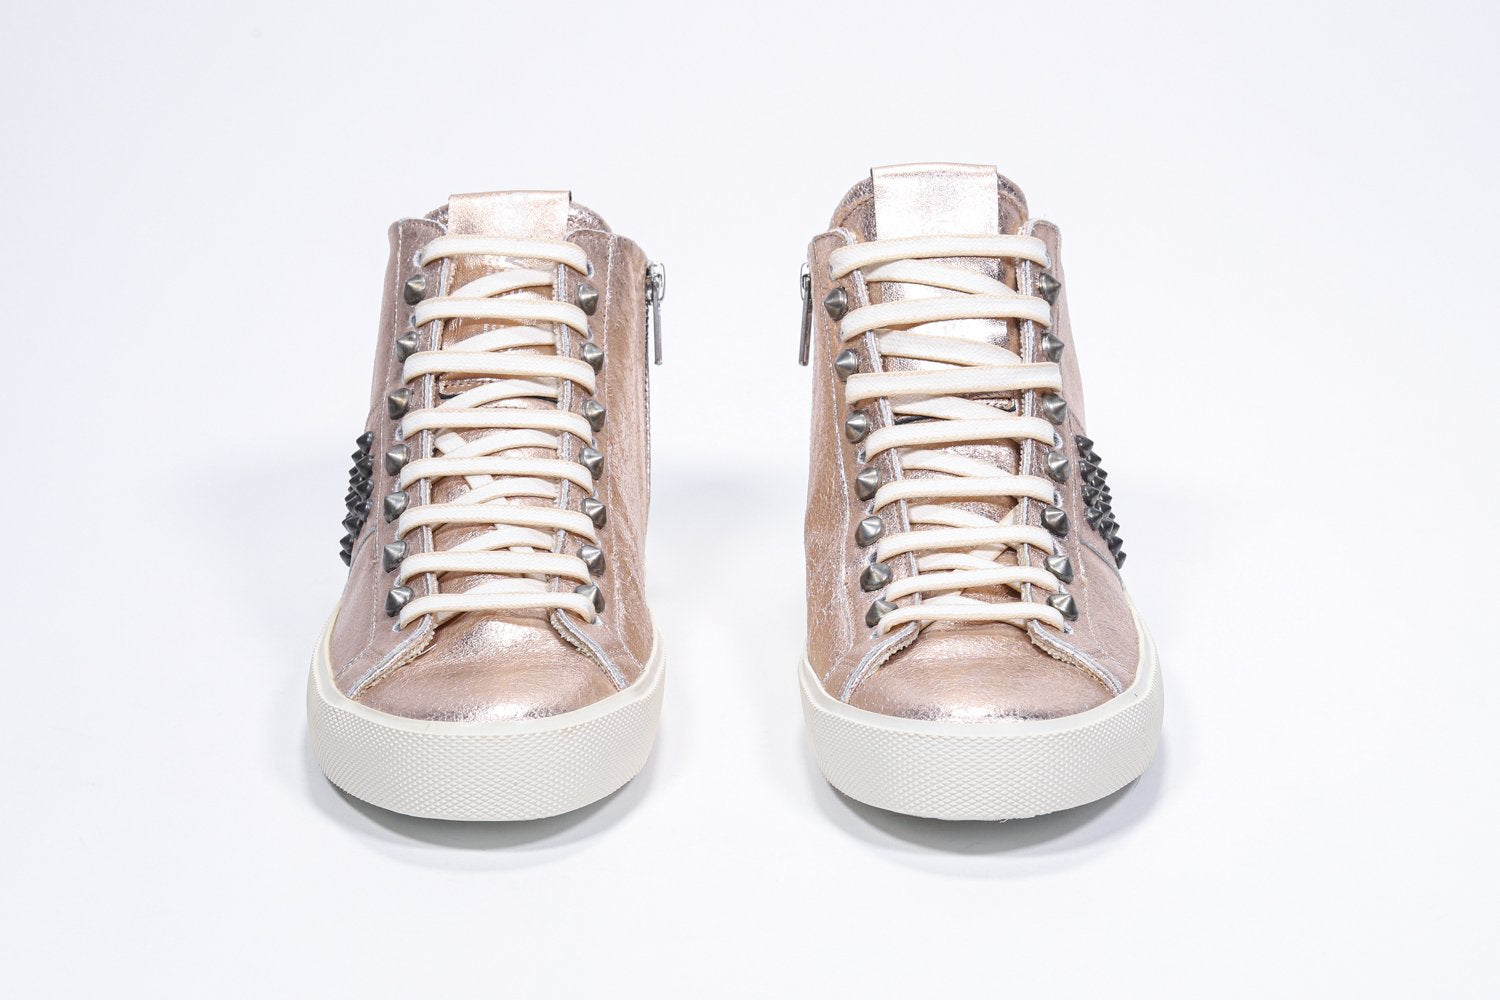 Vue de face de la chaussure intermédiaire en rose métallique sneaker. Tige en cuir avec clous, fermeture éclair intérieure et semelle en caoutchouc vintage.